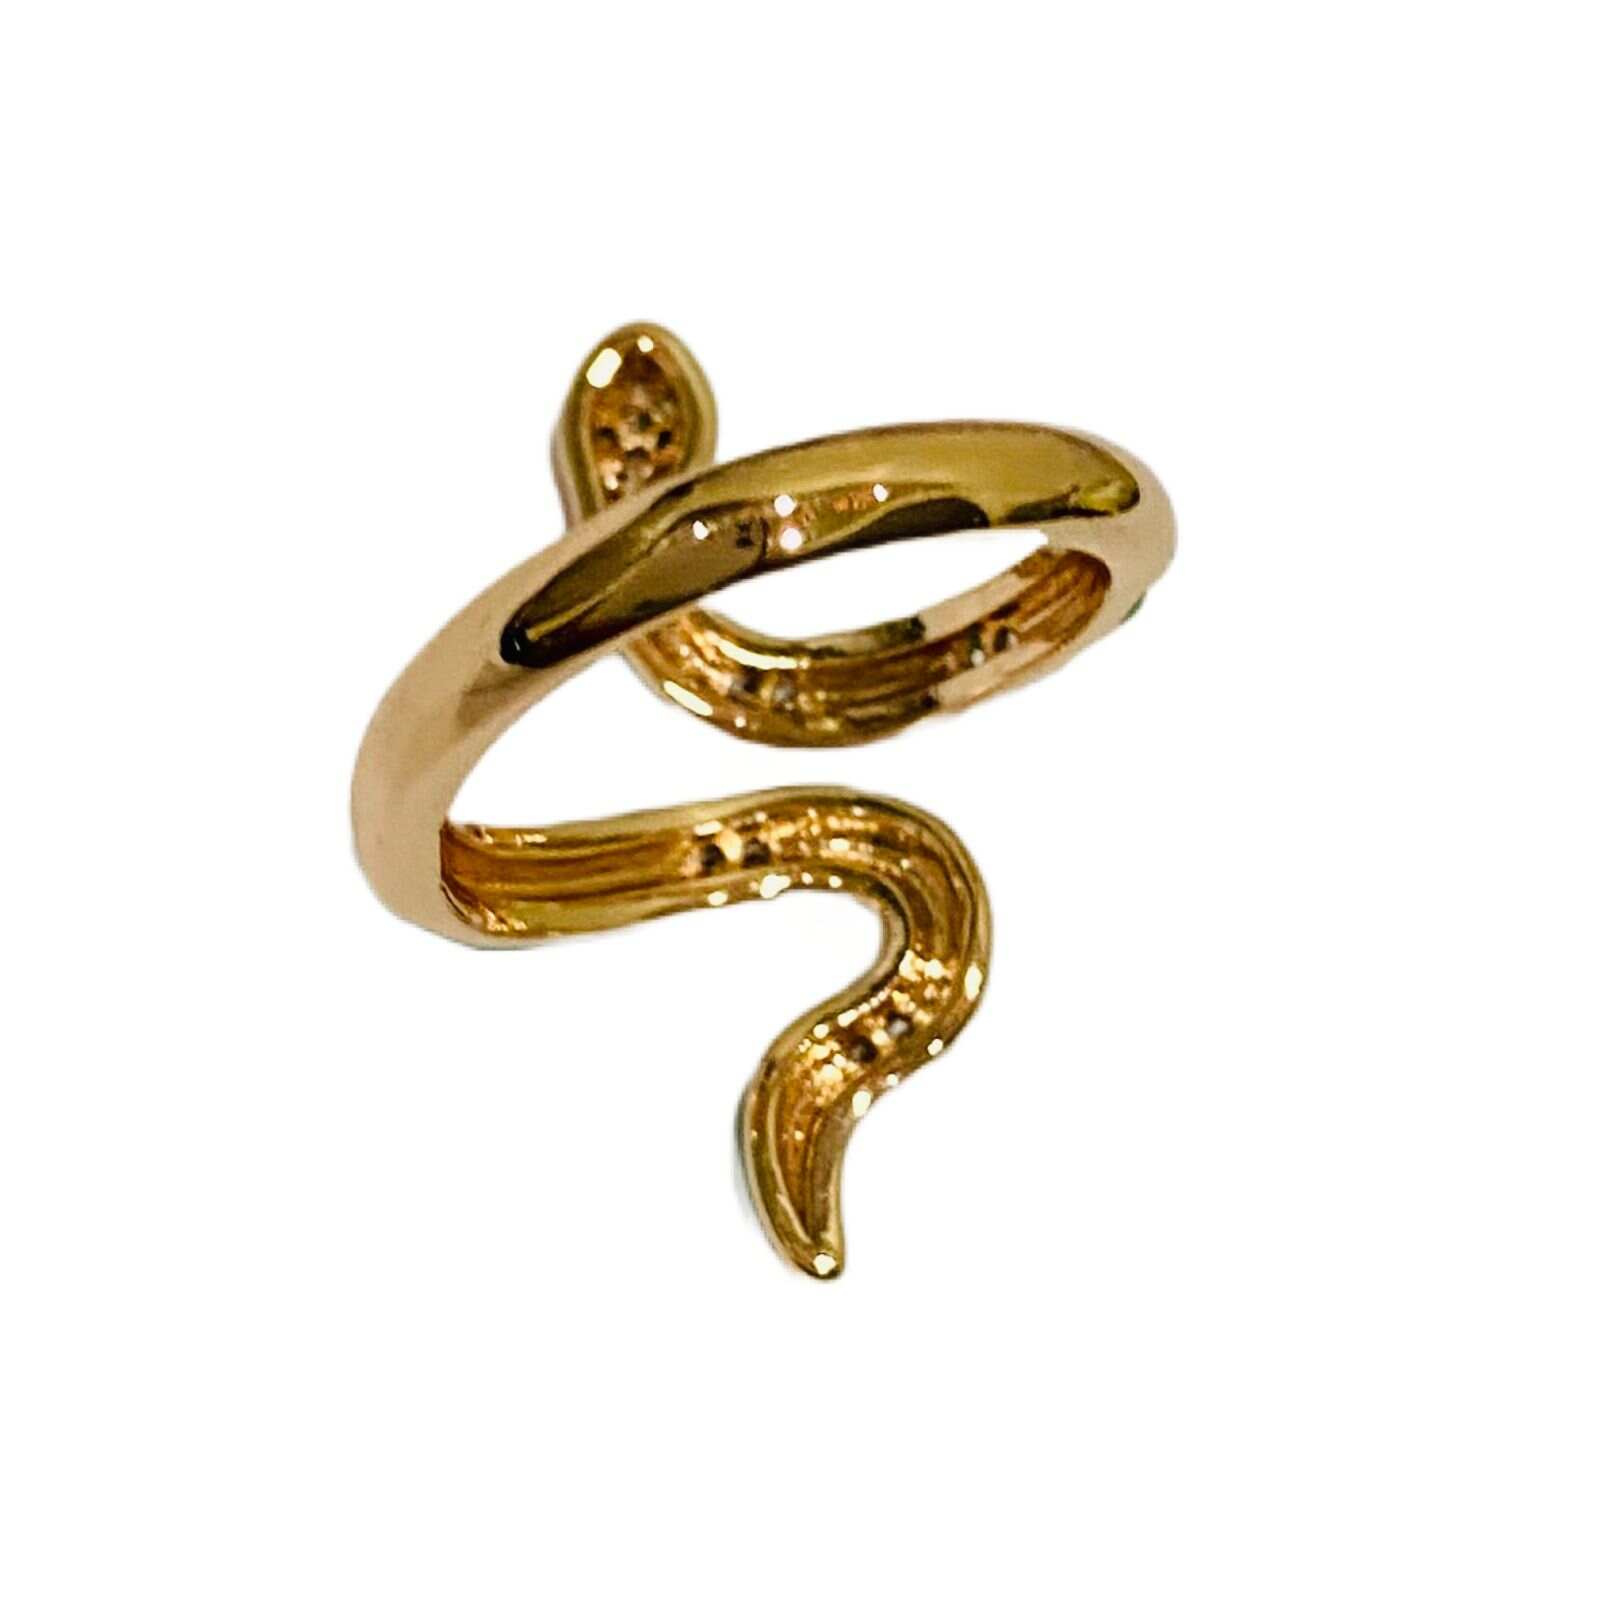 Ring Snake - Adjustable Snake Ring For Girls - Snake Jewellery 